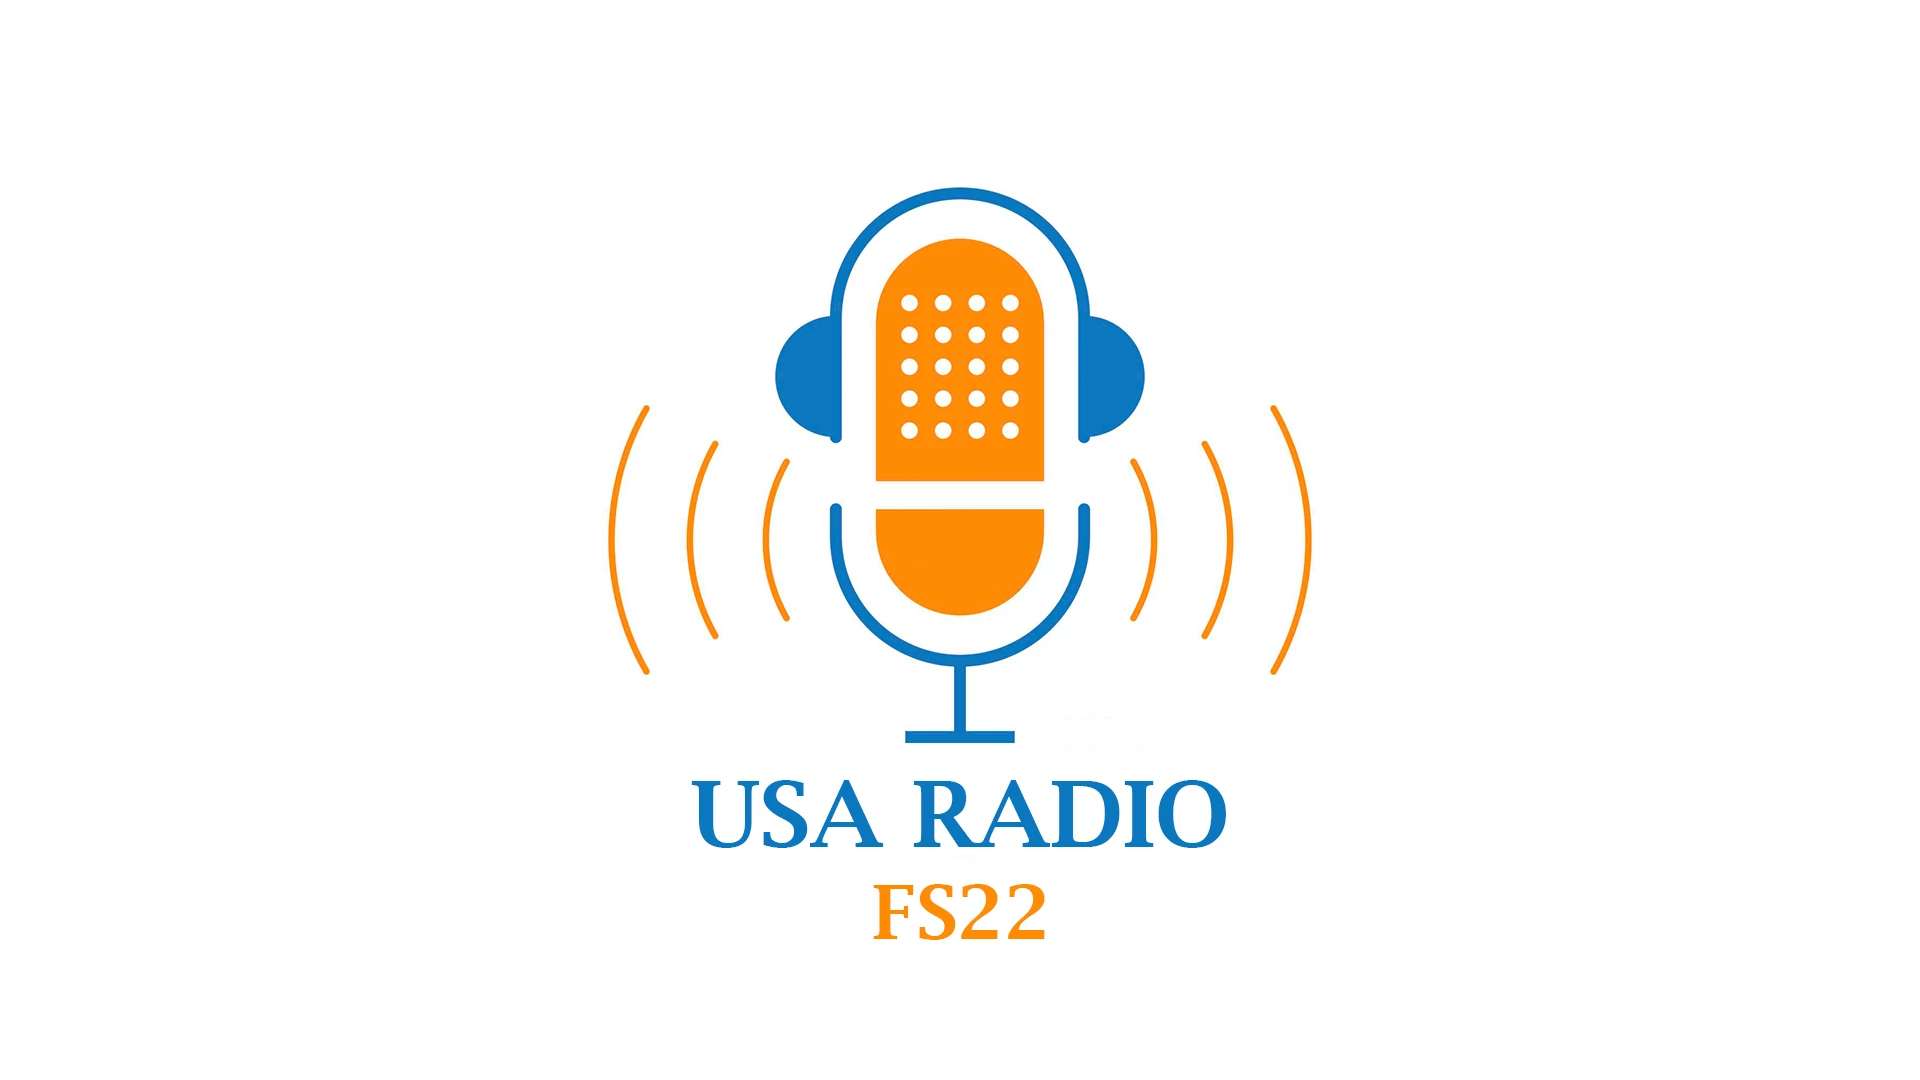 USA-RADIO v1.0